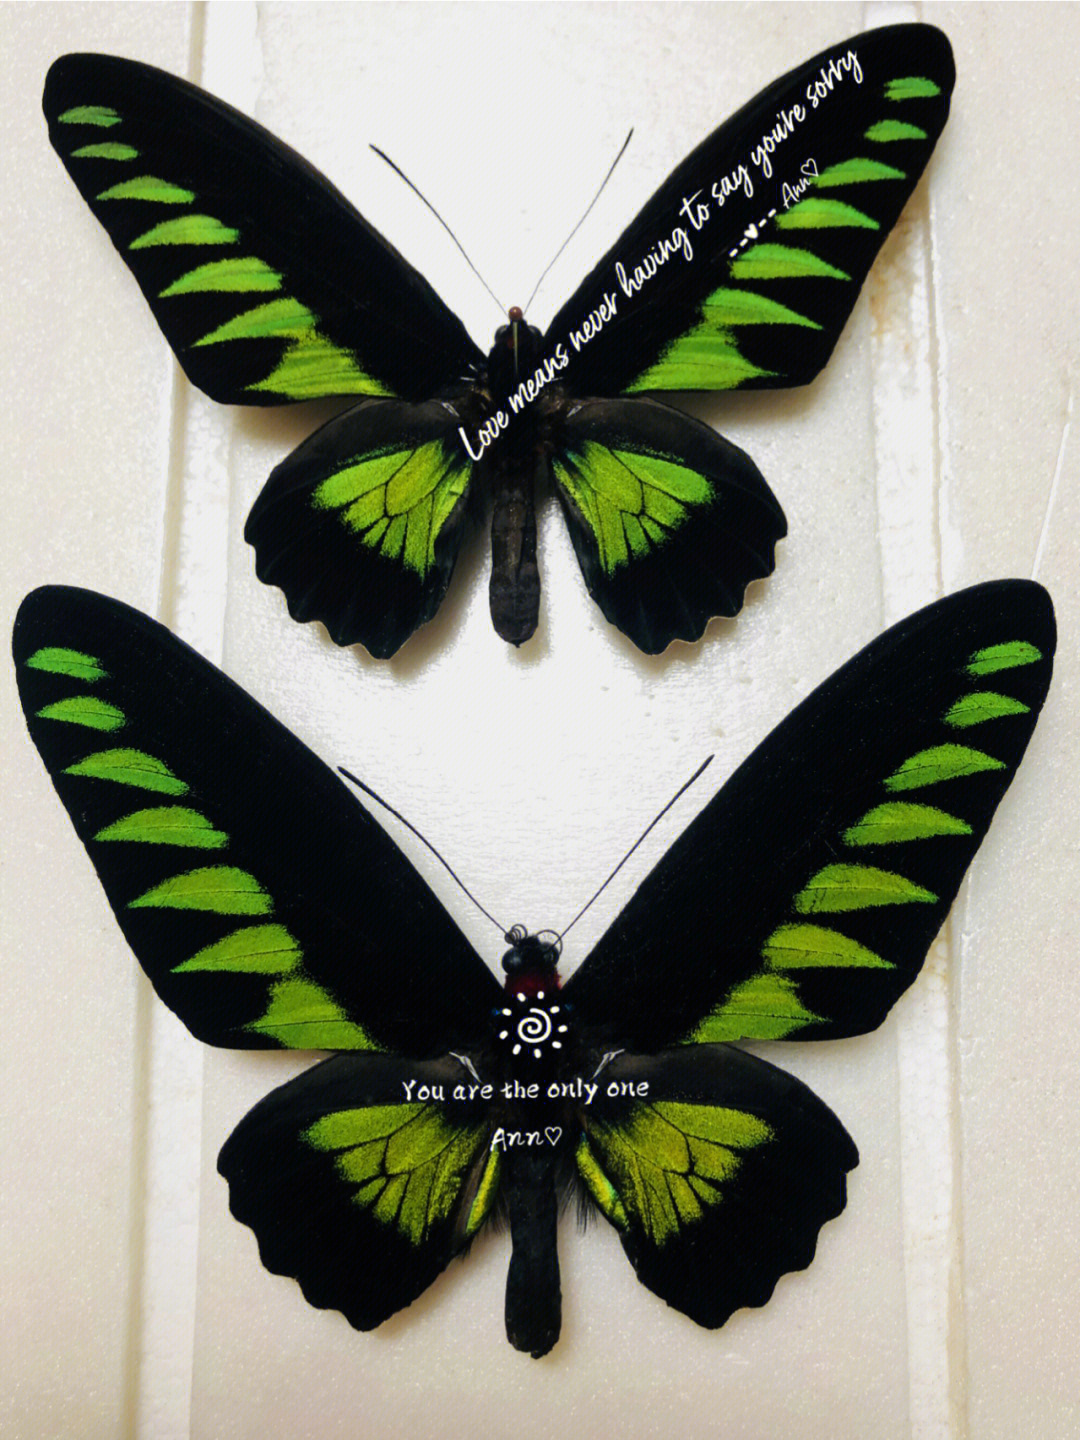 红颈鸟翼凤蝶标本图片